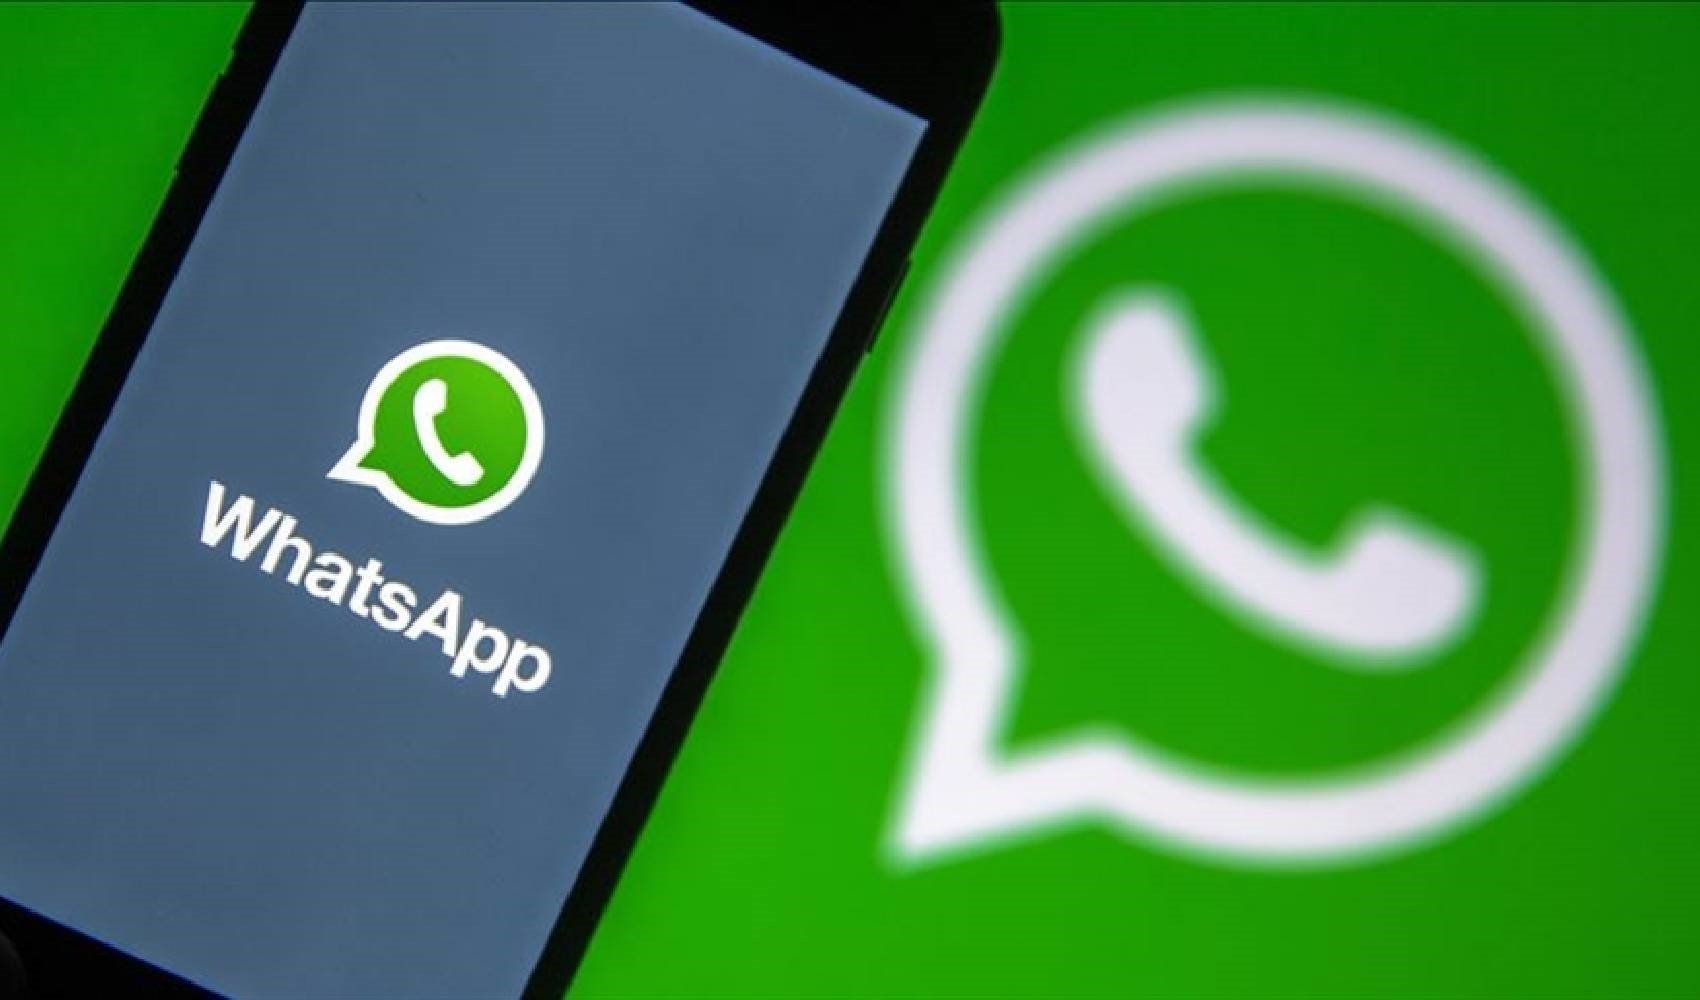 WhatsApp duyurdu: HD fotoğraf ve videolar yüksek kalitede gönderilebilecek